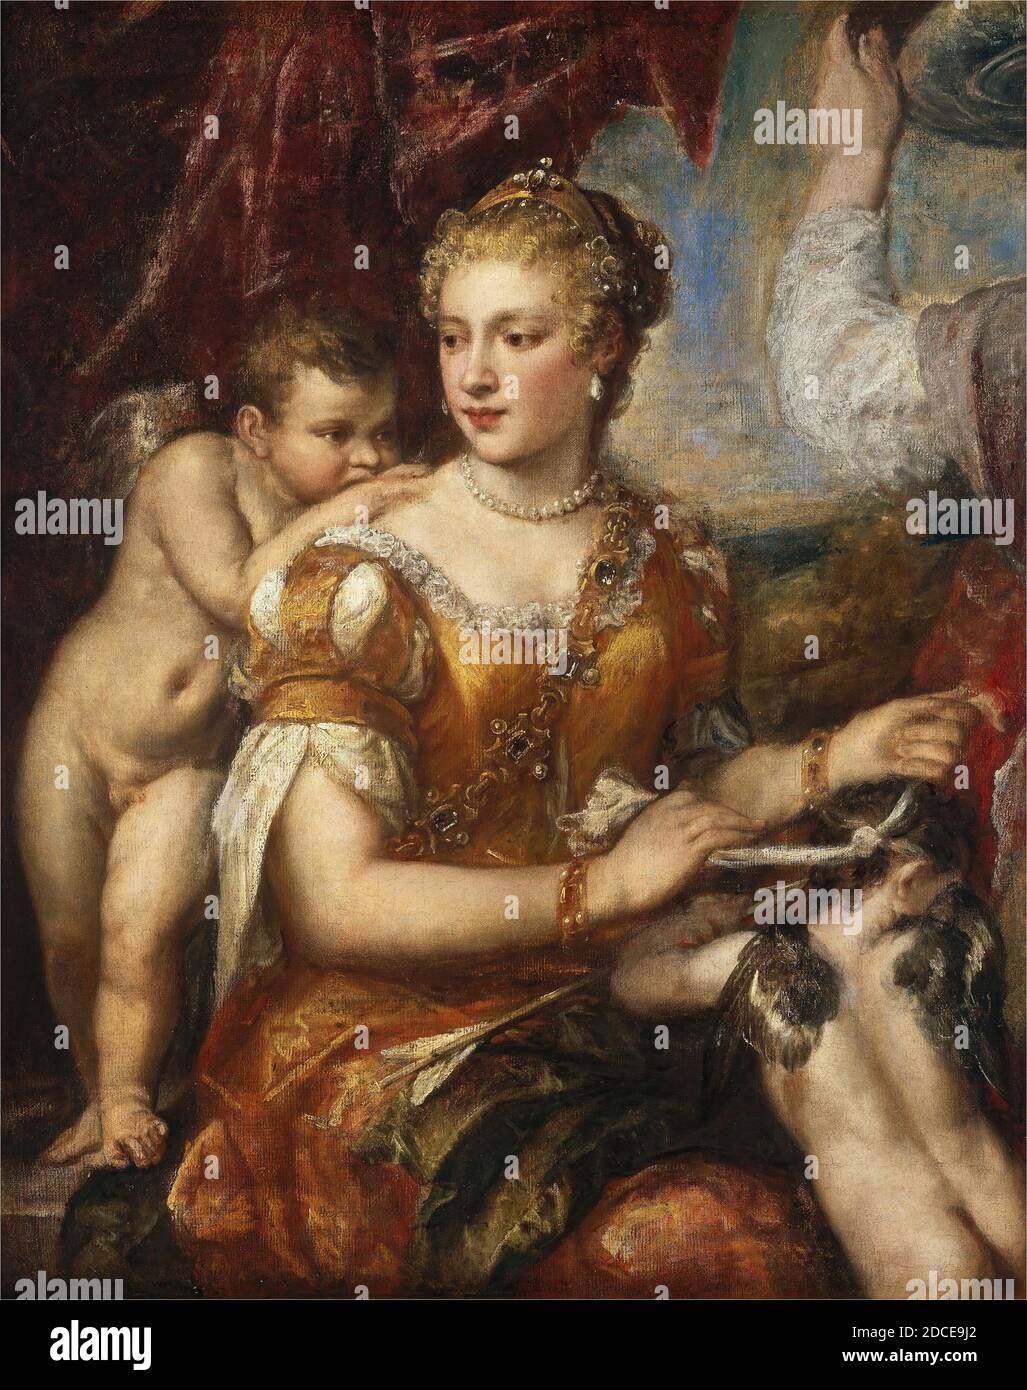 Italien XVIe siècle, (peintre), Titien, (artiste apparenté), vénitien, 1488/1490 - 1576, artiste anonyme, (peintre), Titien, (artiste apparenté), vénitien, 1488/1490 - 1576, Vénus aveuglément Cupidon, c. 1566/1570 ou c. 1576/1580, huile sur toile, hors tout: 122.4 x 97.3 cm (48 3/16 x 38 5/16 in.), encadré: 142.9 x 122.1 x 12.1 cm (56 1/4 x 48 1/16 x 4 3/4 in Banque D'Images